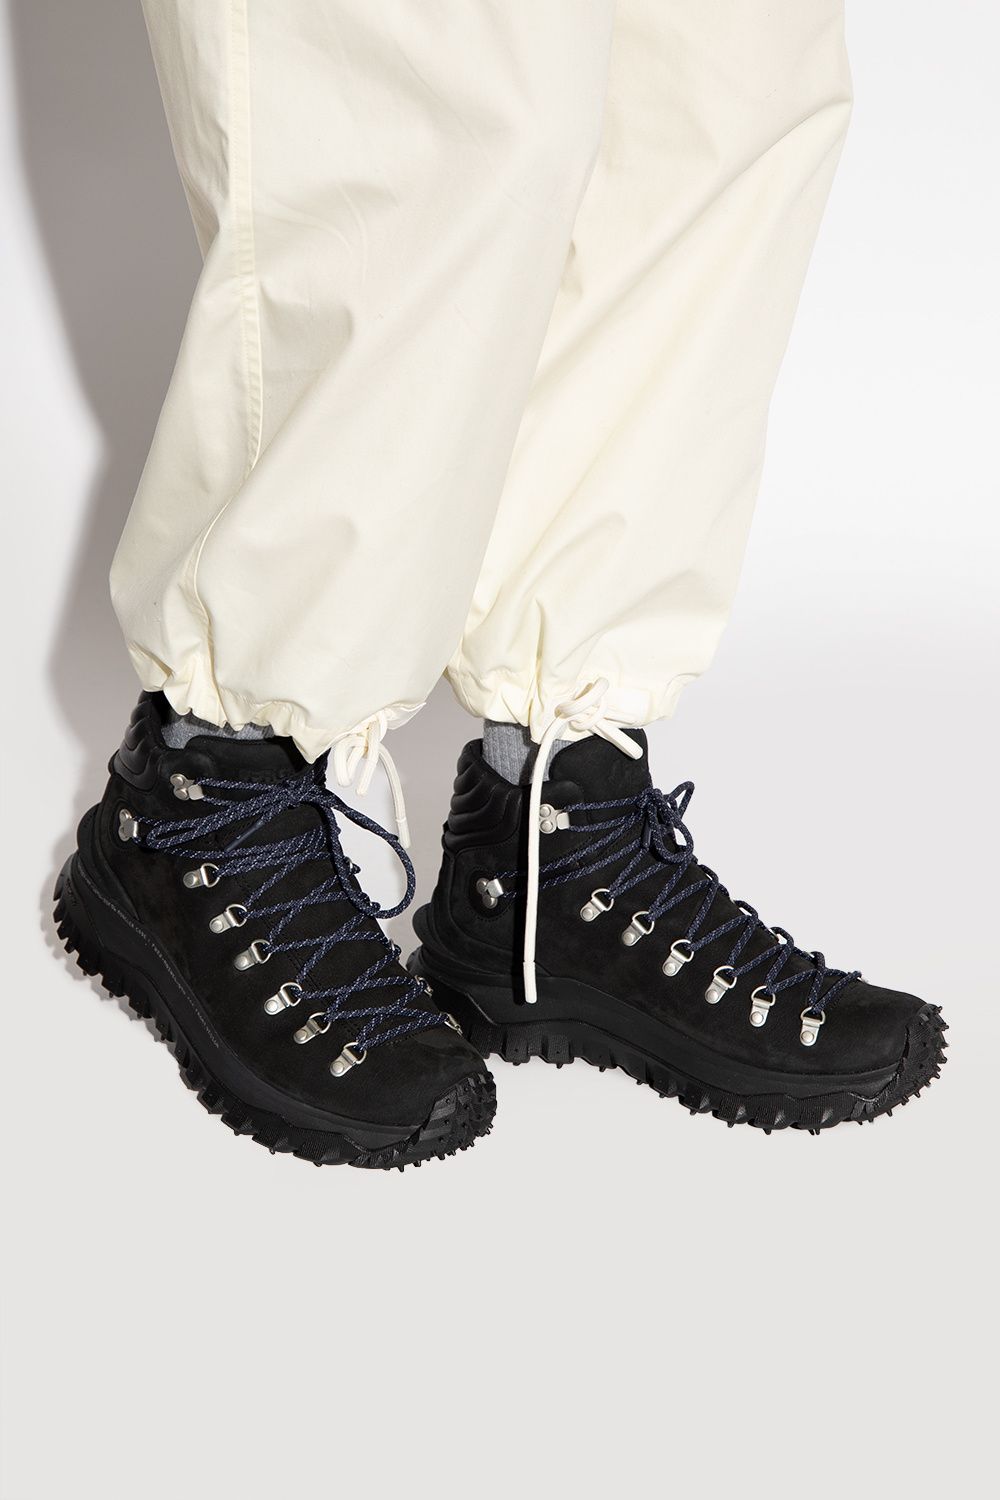 Moncler Genius 7 MONCLER FRAGMENT HIROSHI FUJIWARA | Men's Shoes